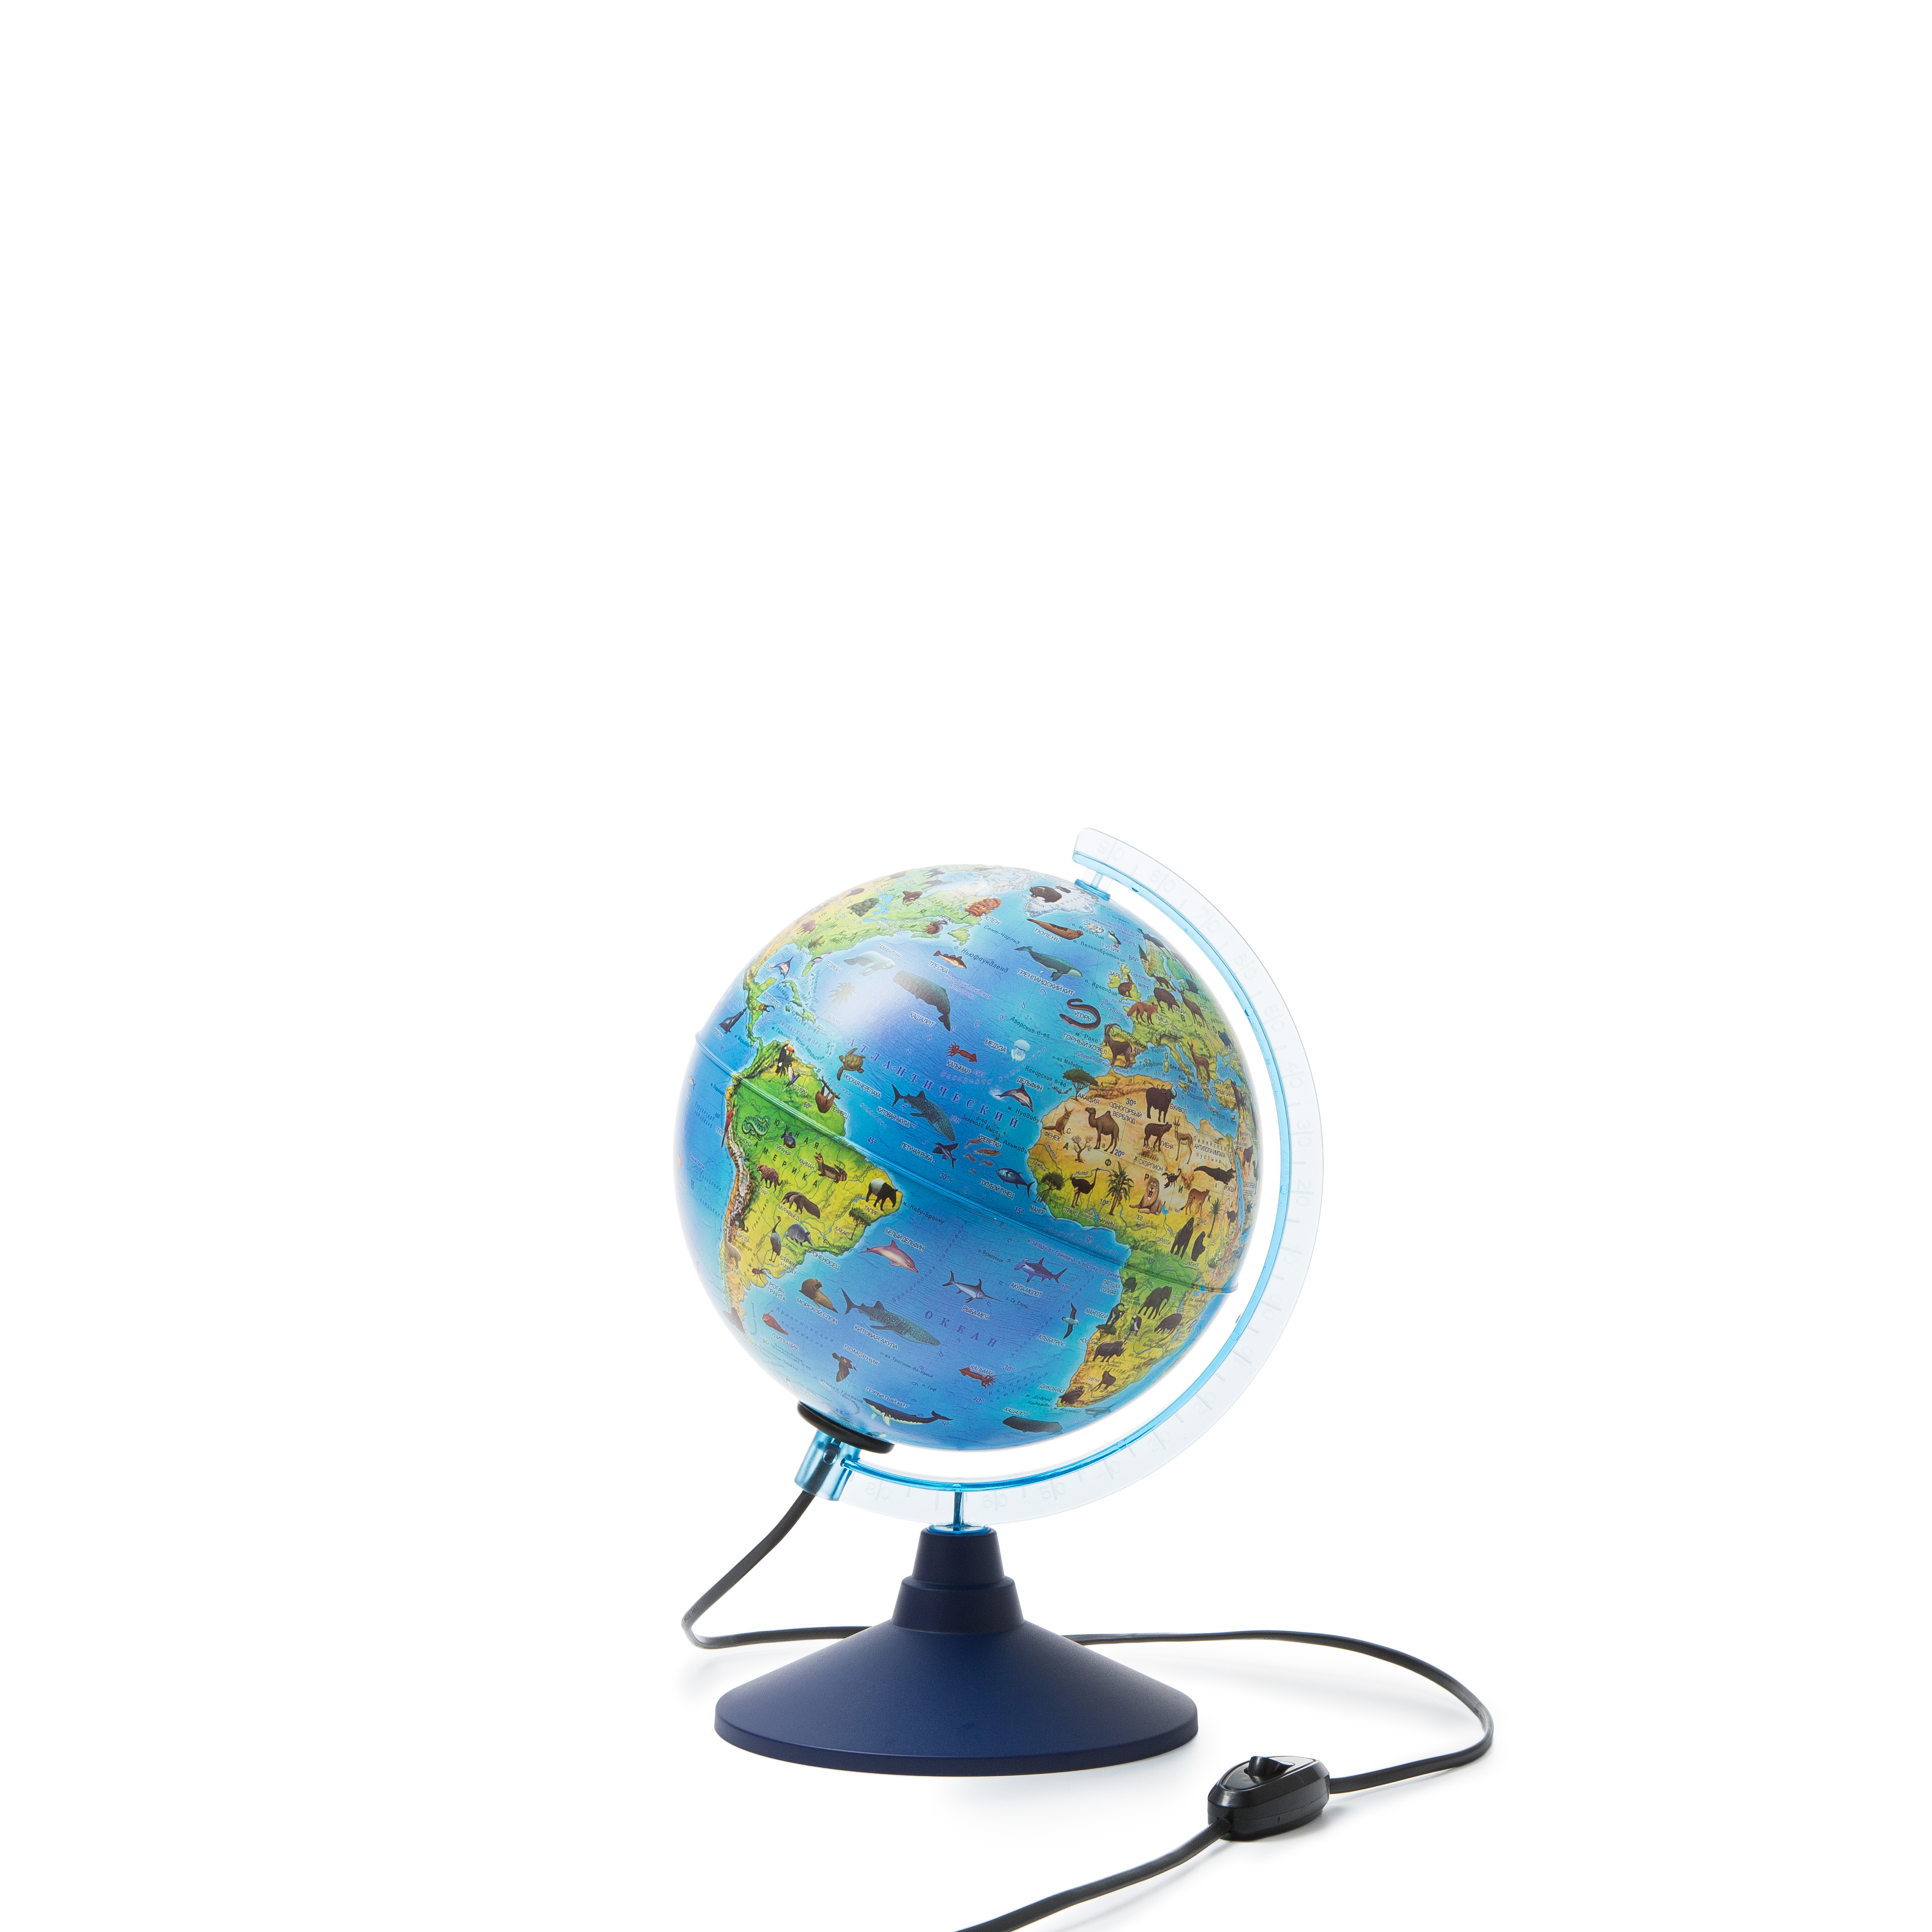 Глобусы : Интерактивный глобус D-210 мм Зоогеографический (Детский) с  подсветкой . Очки виртуальной реальности (VR) в комплекте.